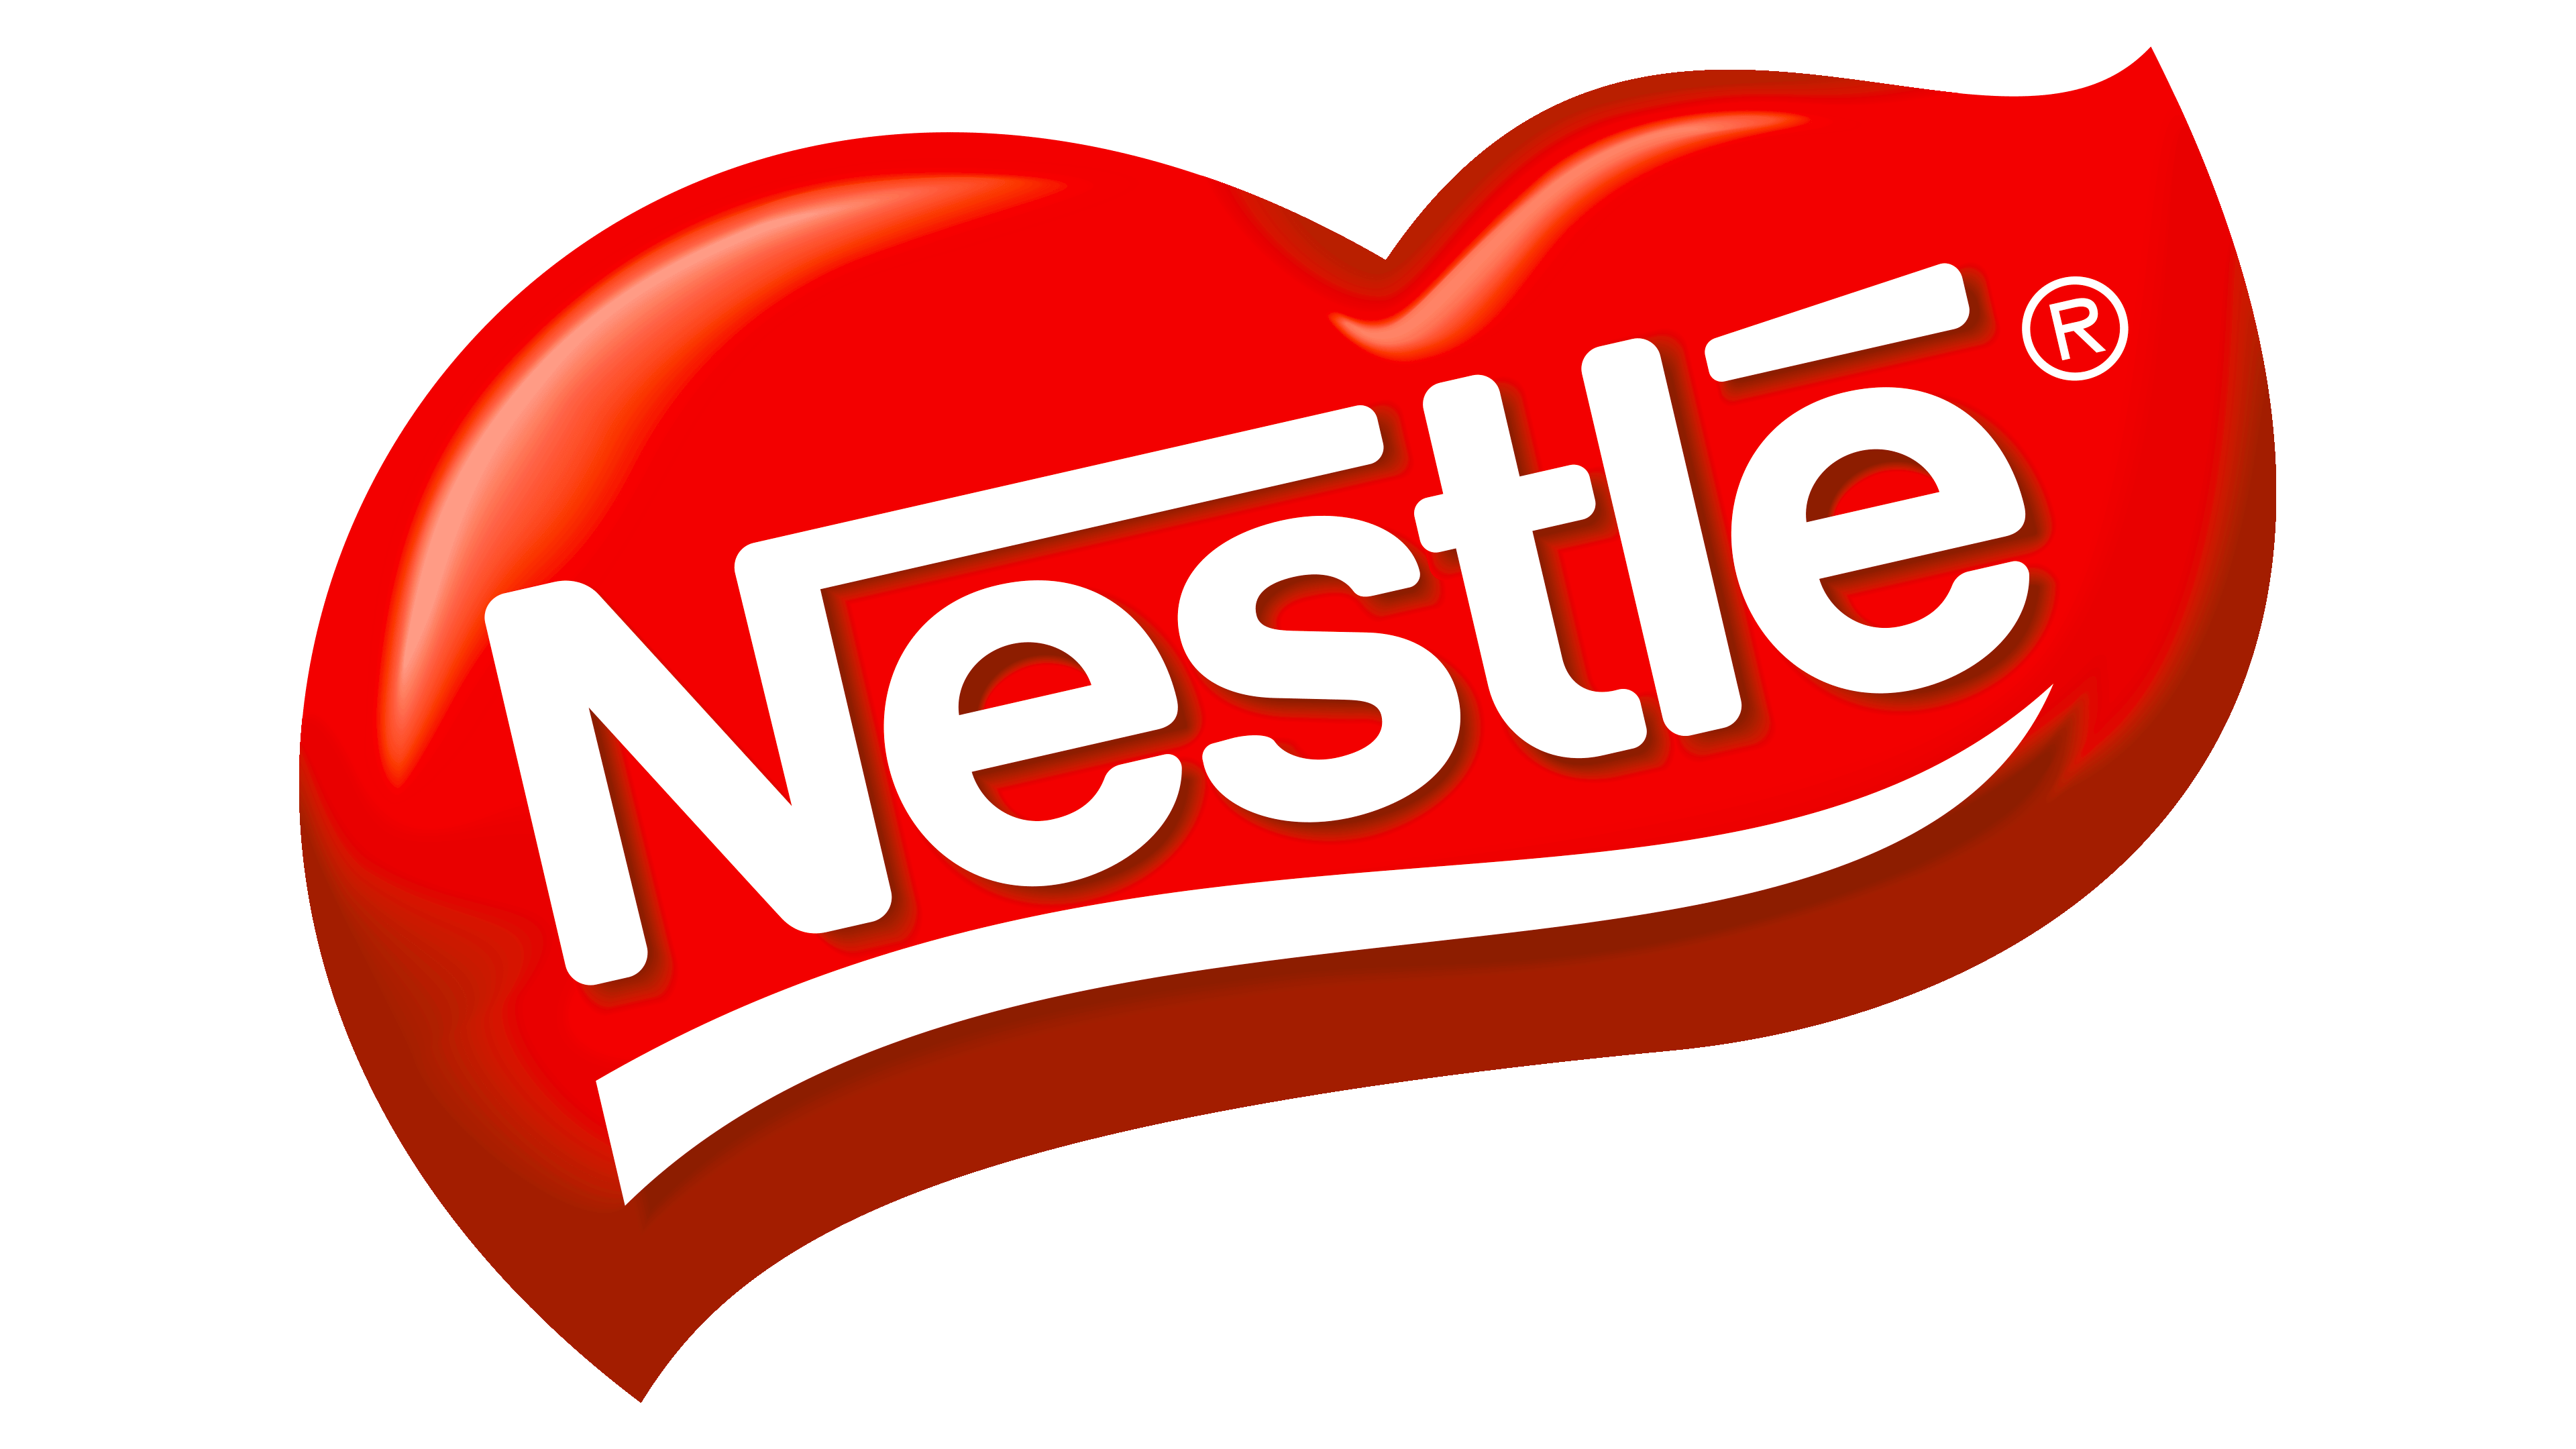 nestle product logos